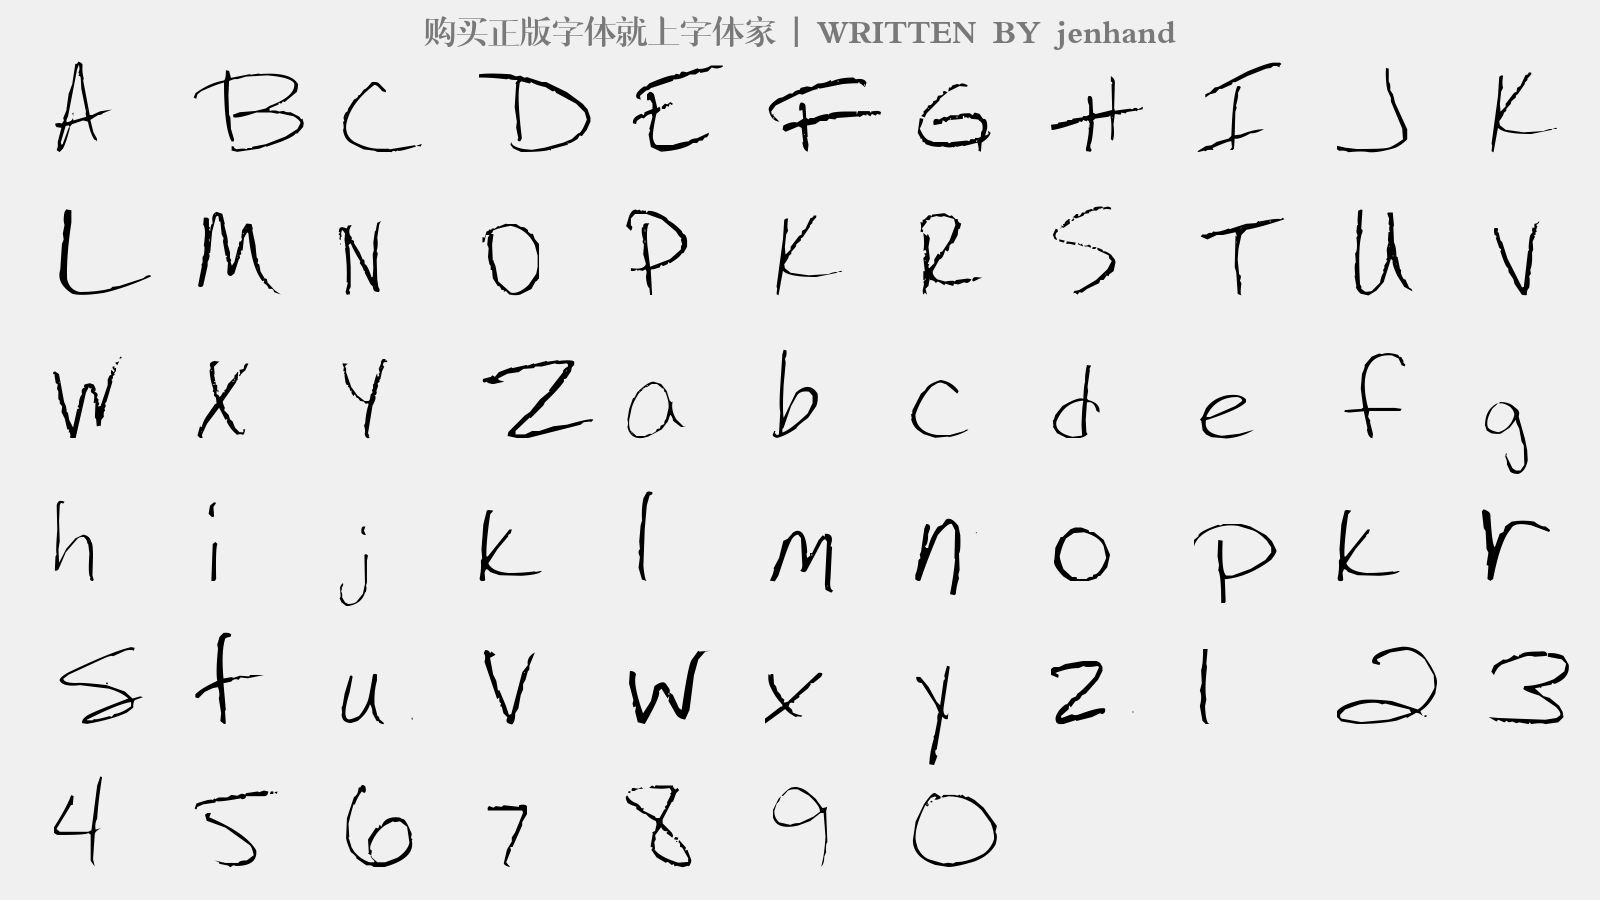 jenhand - 大写字母/小写字母/数字